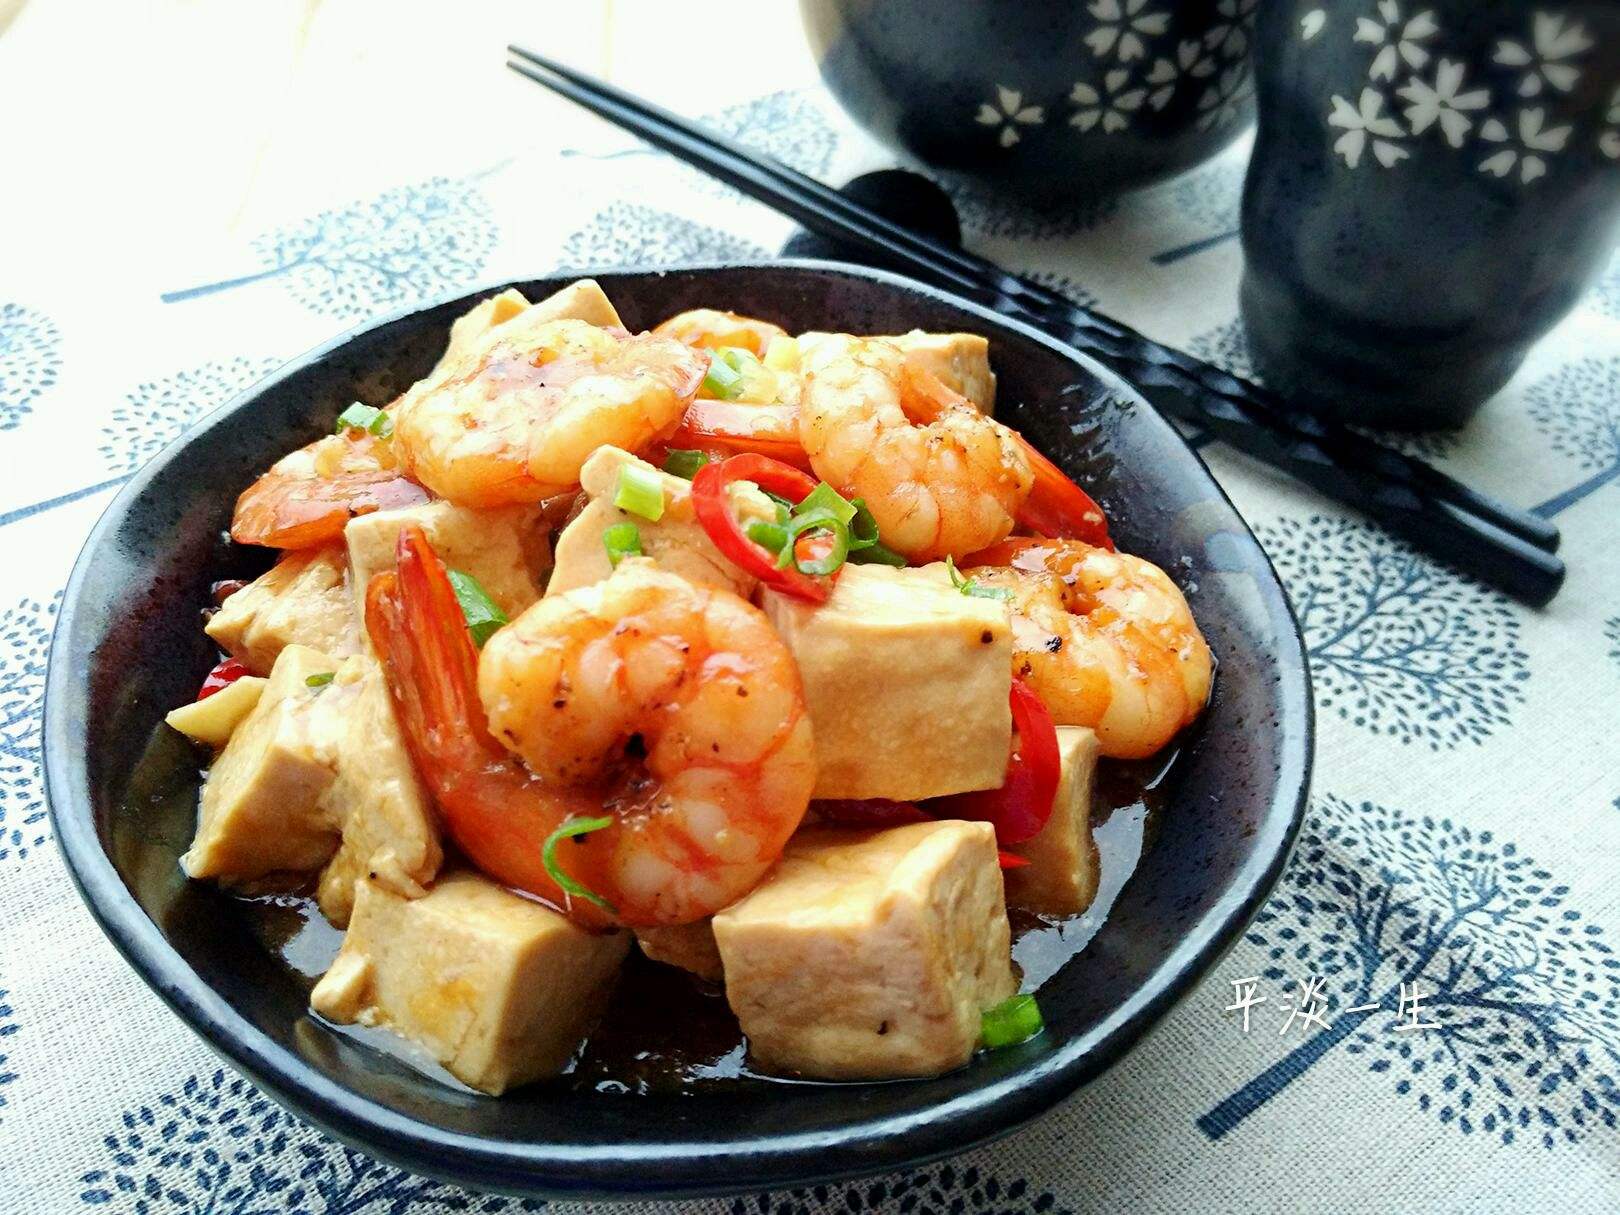 虾仁烧豆腐:鲜香细腻,入口即化,好吃极了